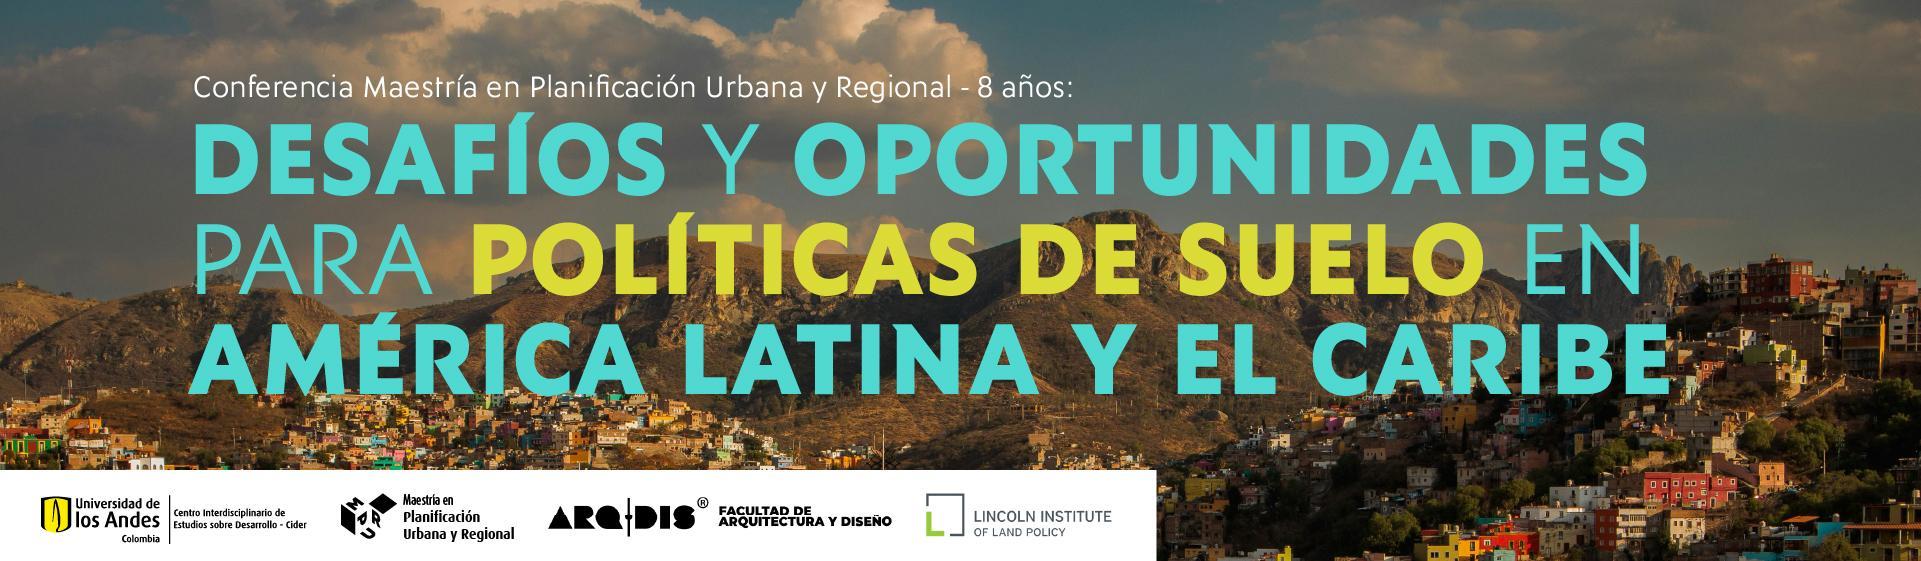 Desafíos y oportunidades para políticas de suelo en América Latina y el Caribe | Cider Uniandes